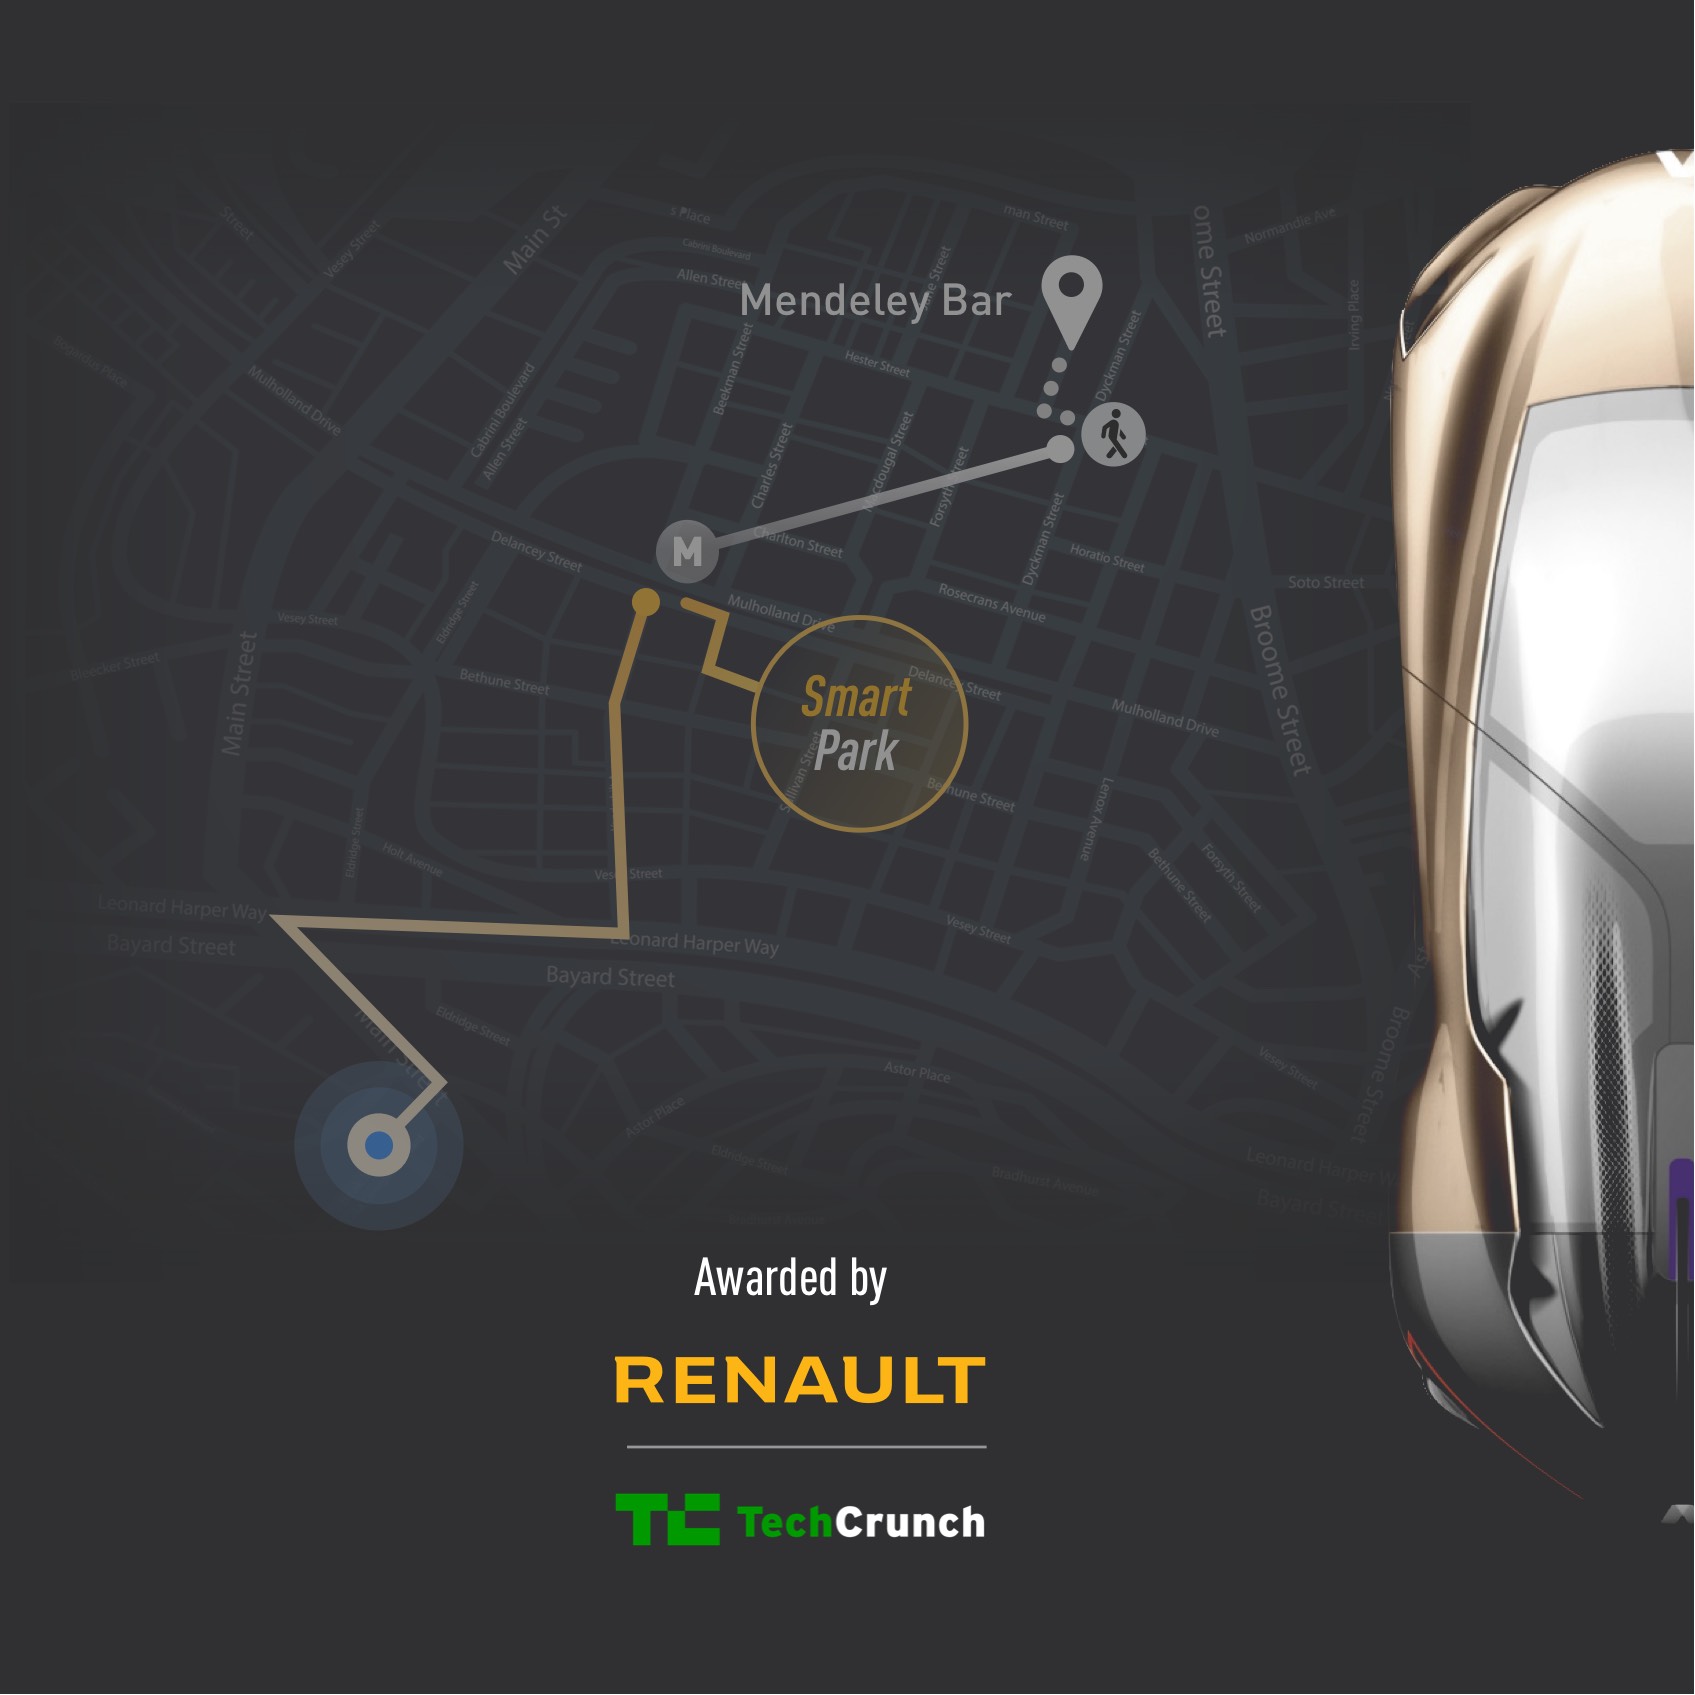 App for Renault Symbioz Autonomous Car